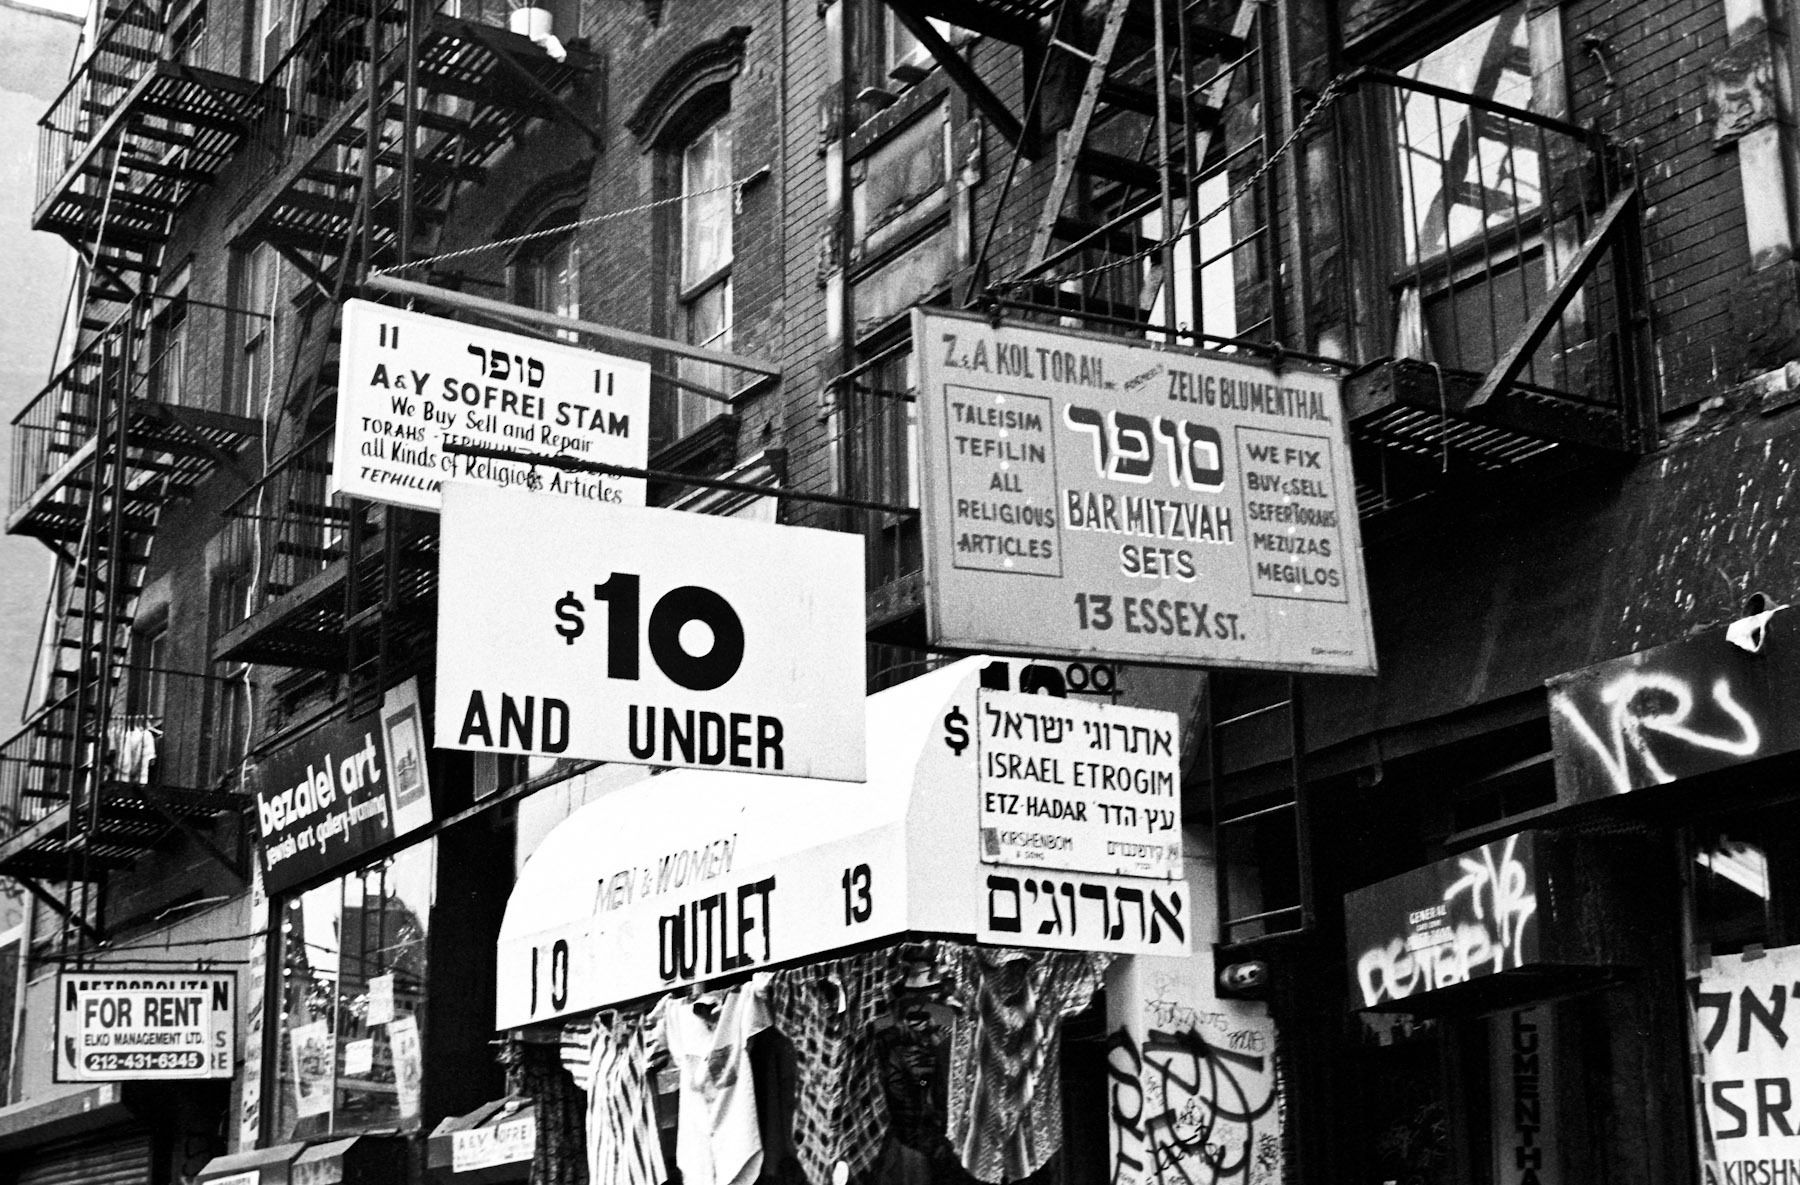 Lower East Side 09/30/93